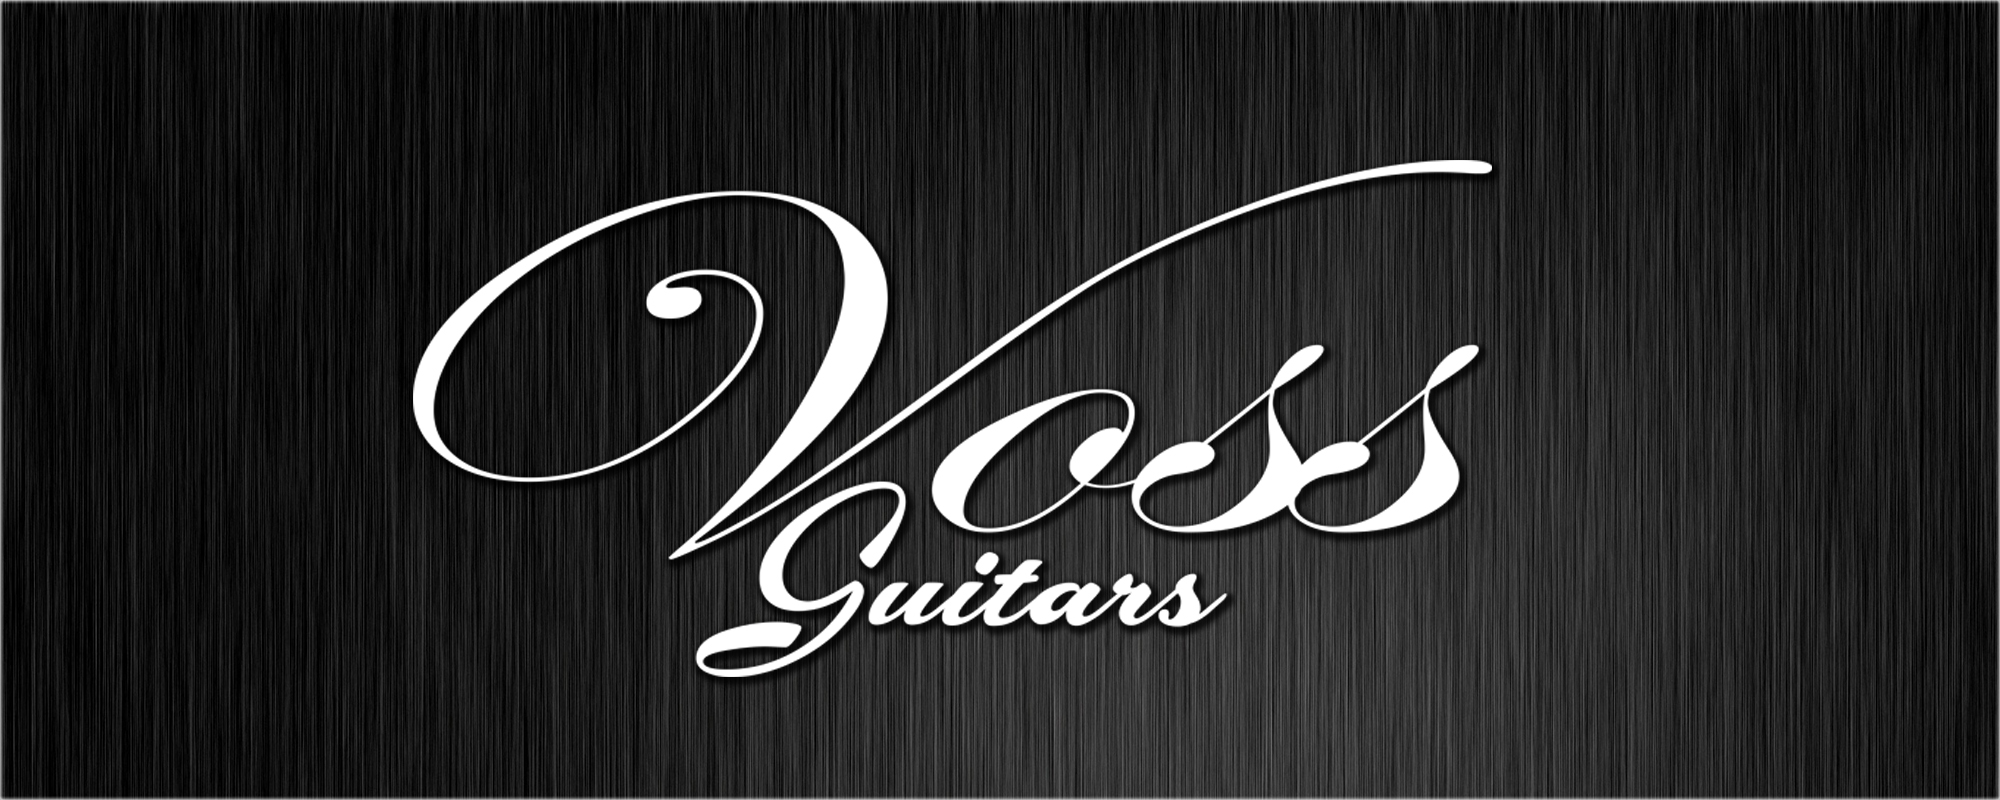 Voss Guitars